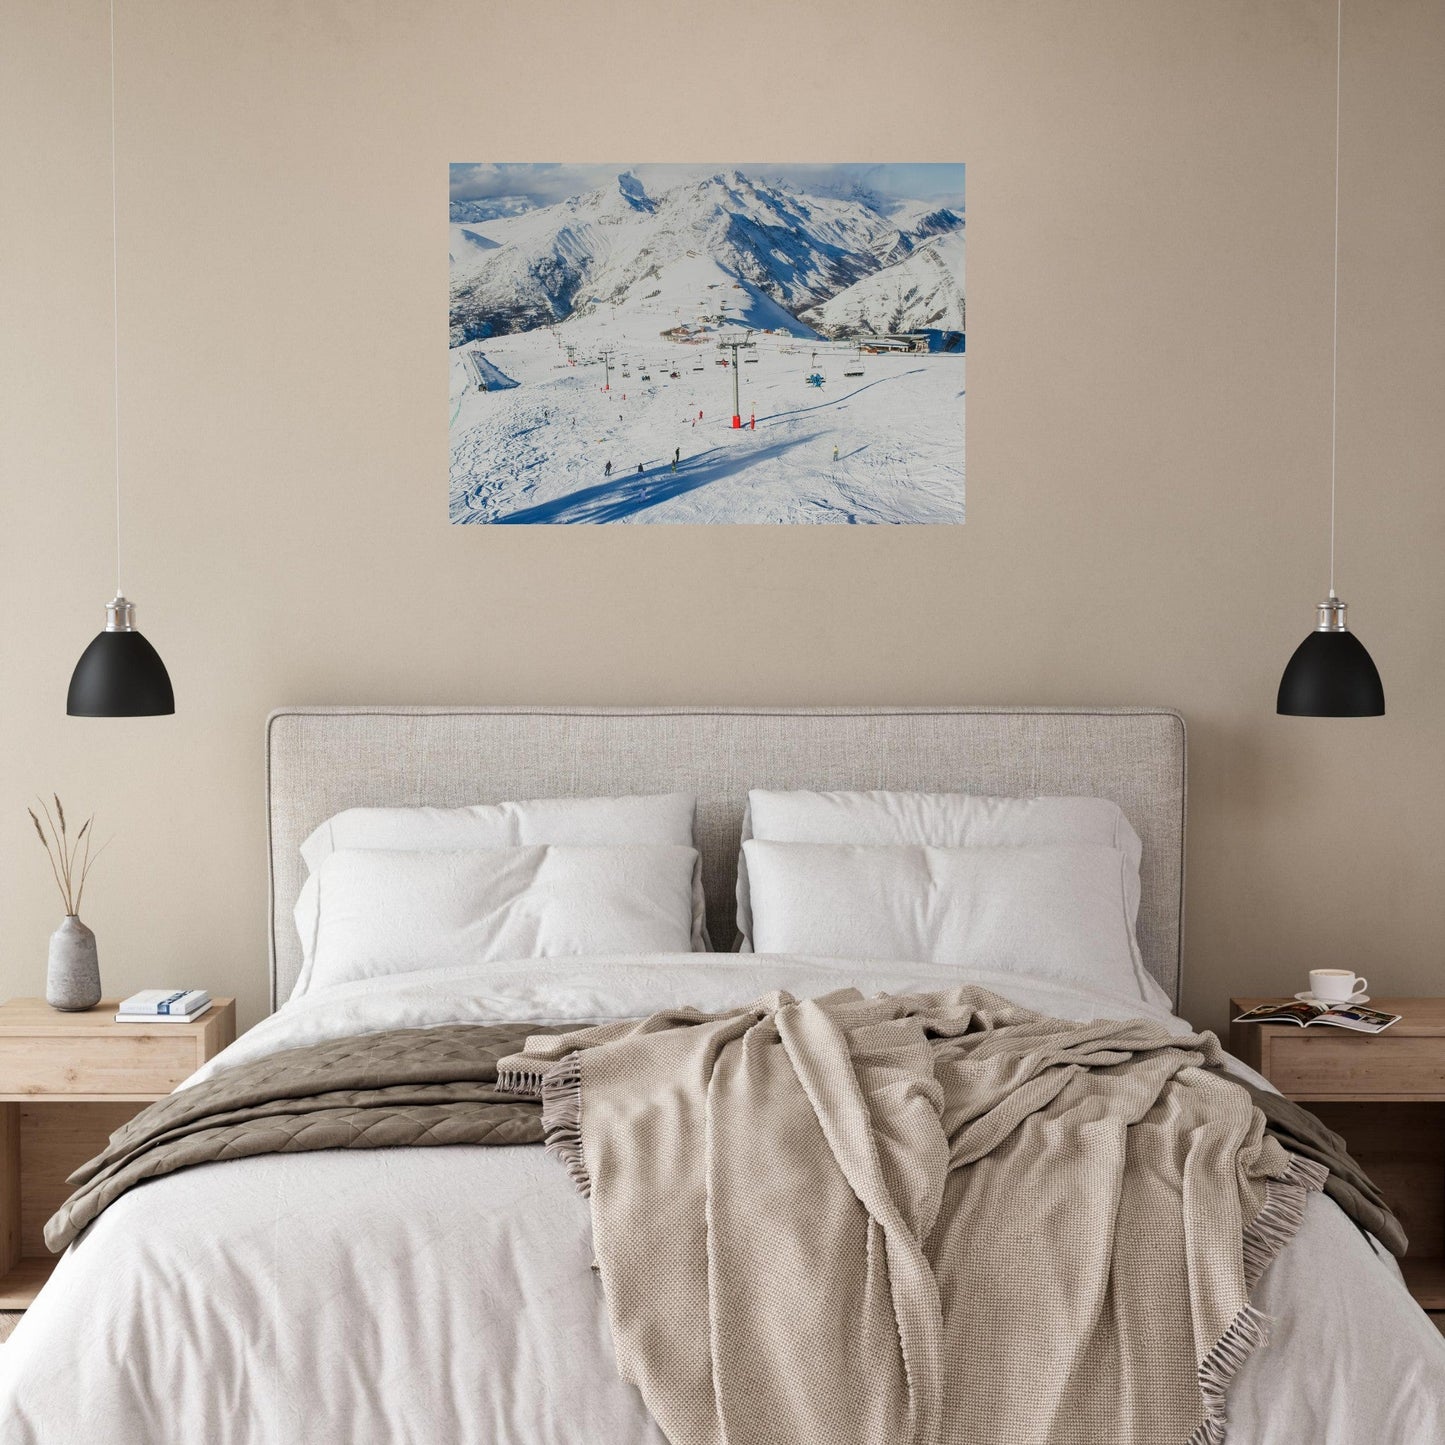 Vente Photo des 2 Alpes en hiver #2 - Tableau photo alu montagne